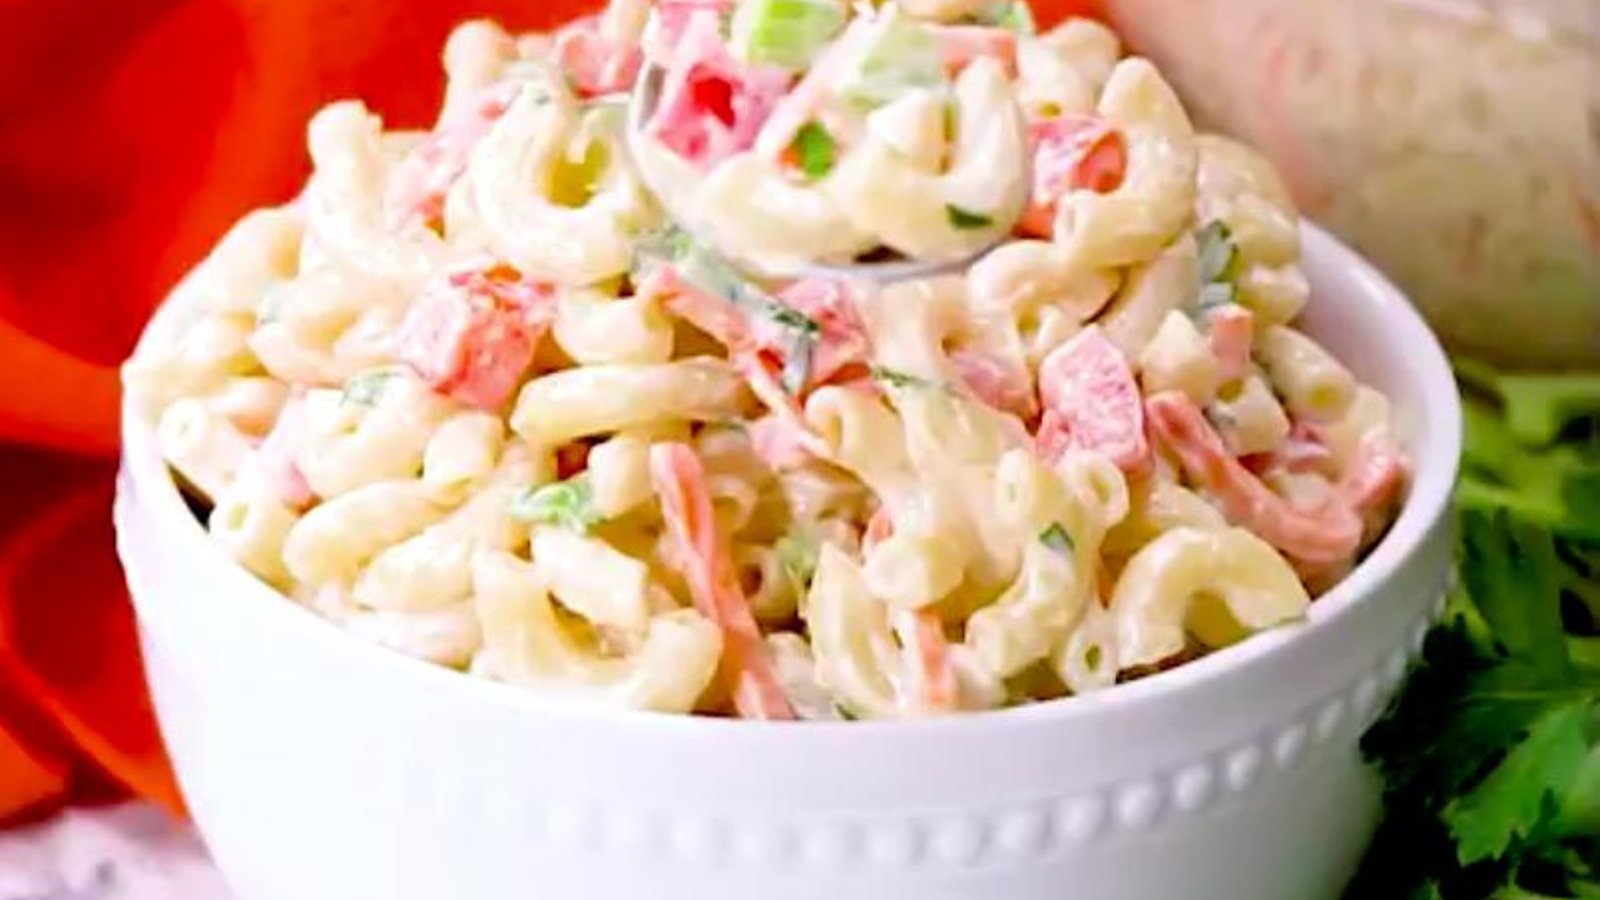 La meilleure recette de salade froide au macaroni que vous aurez mangée!